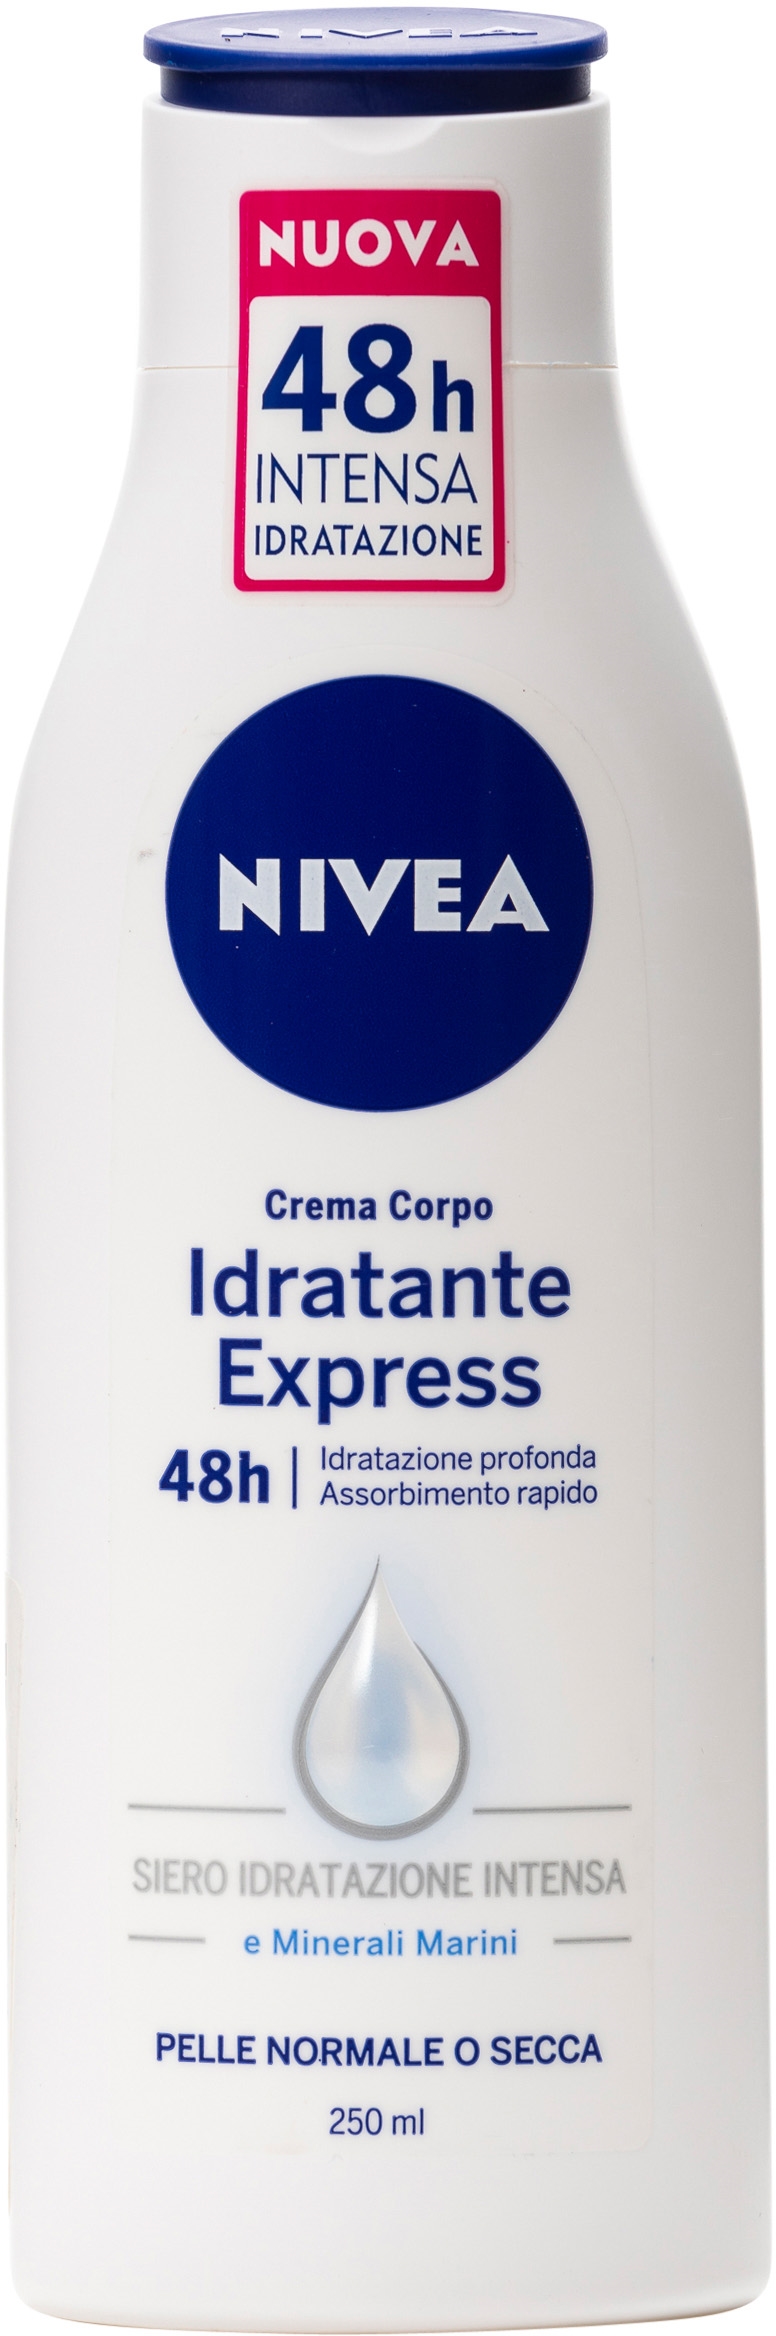 CREMA CORPO IDRATANTE EXPRESS 48H